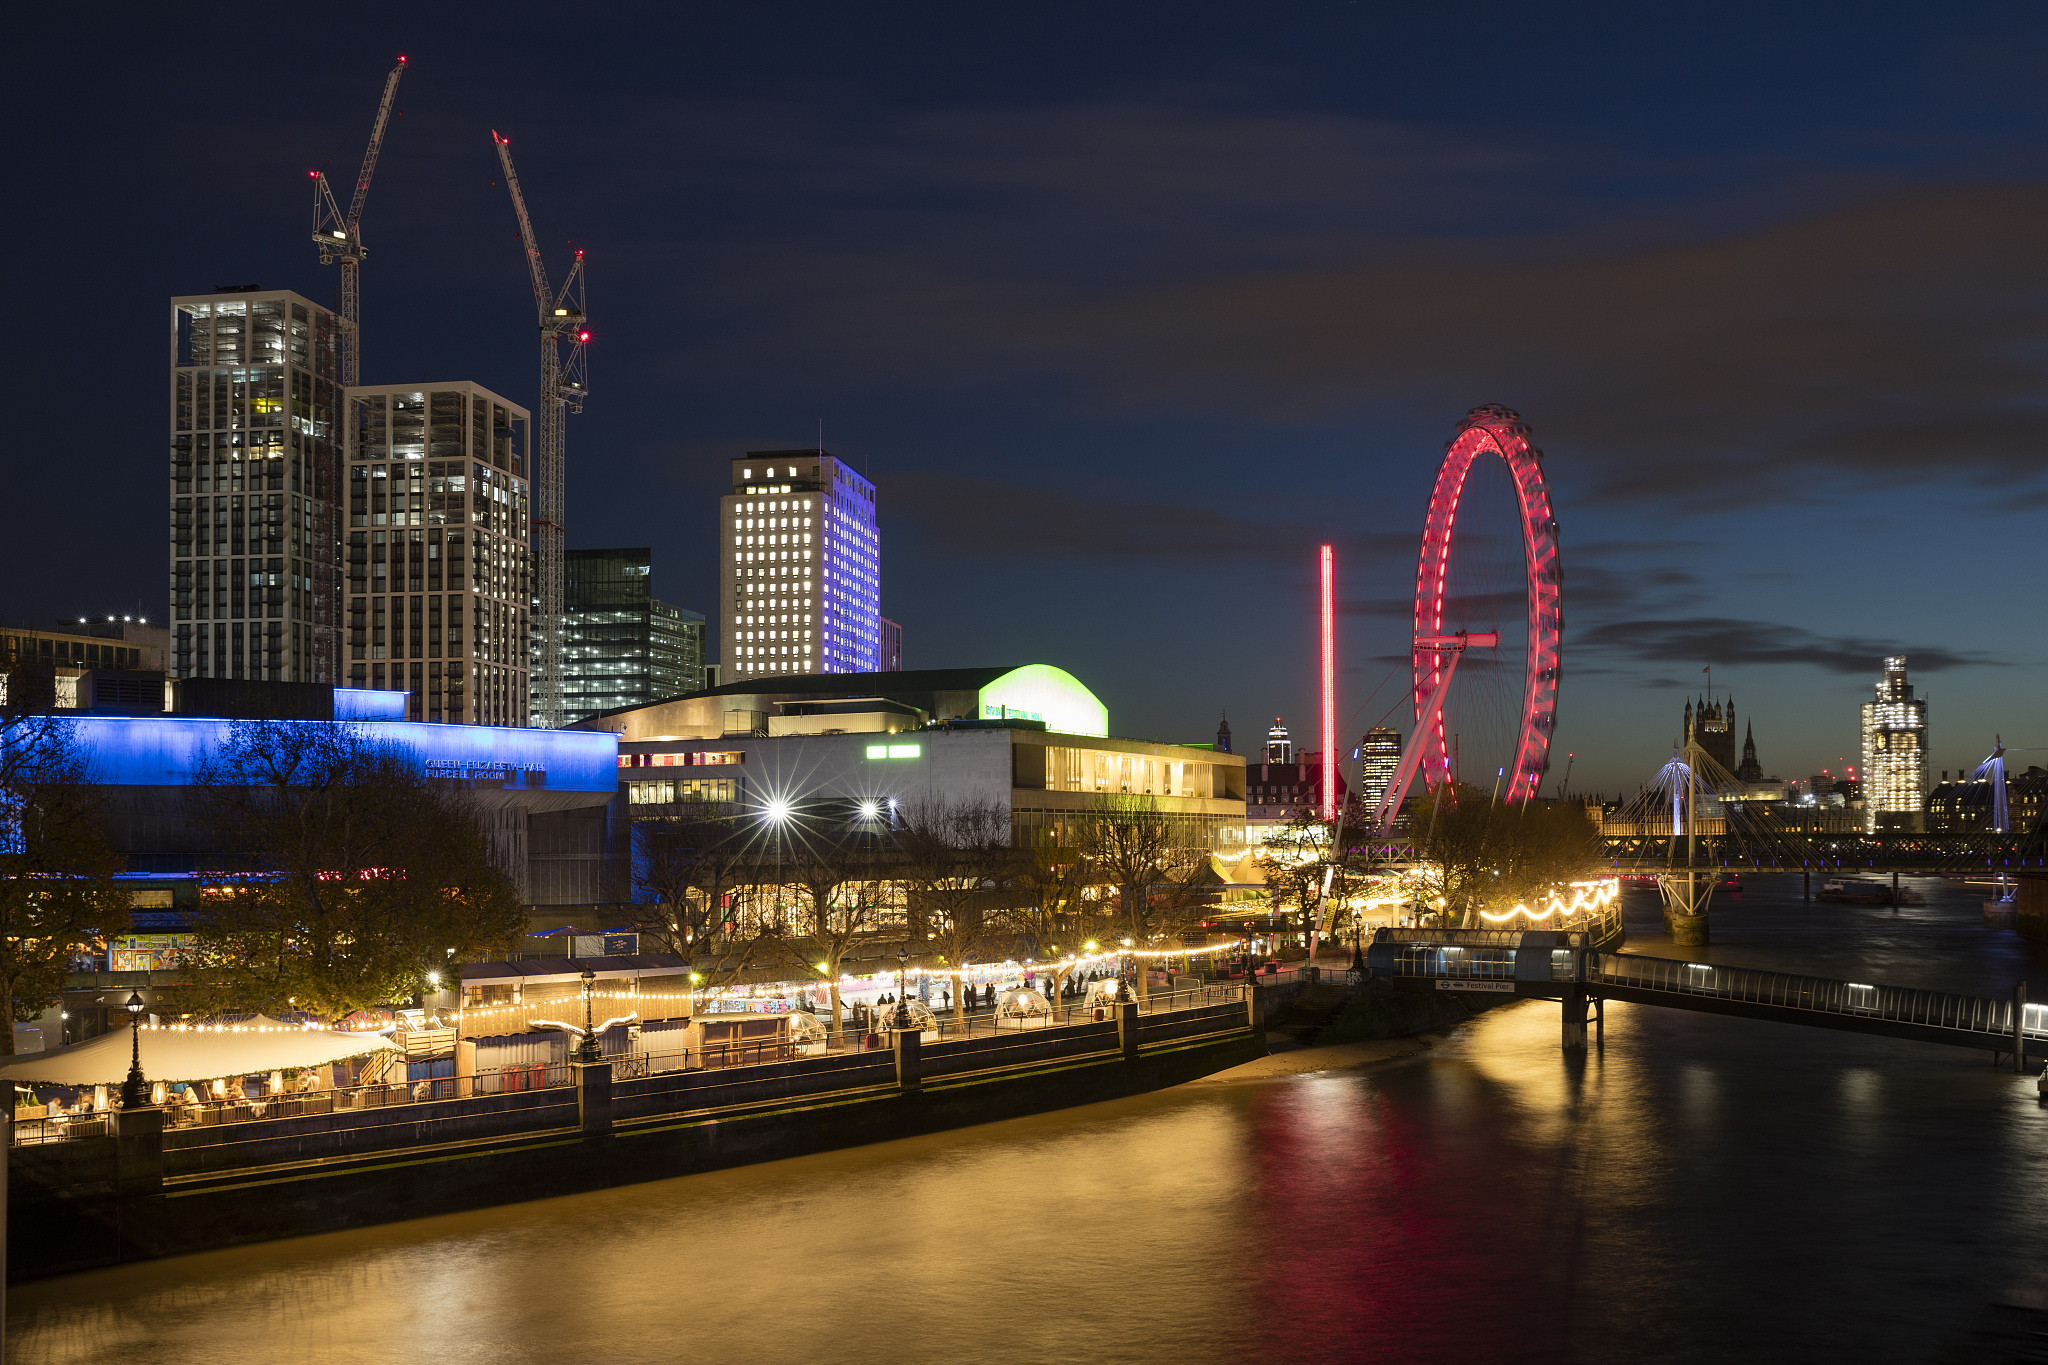 泰晤士河畔的伊丽莎白女王音乐厅、皇家节日音乐厅和伦敦眼